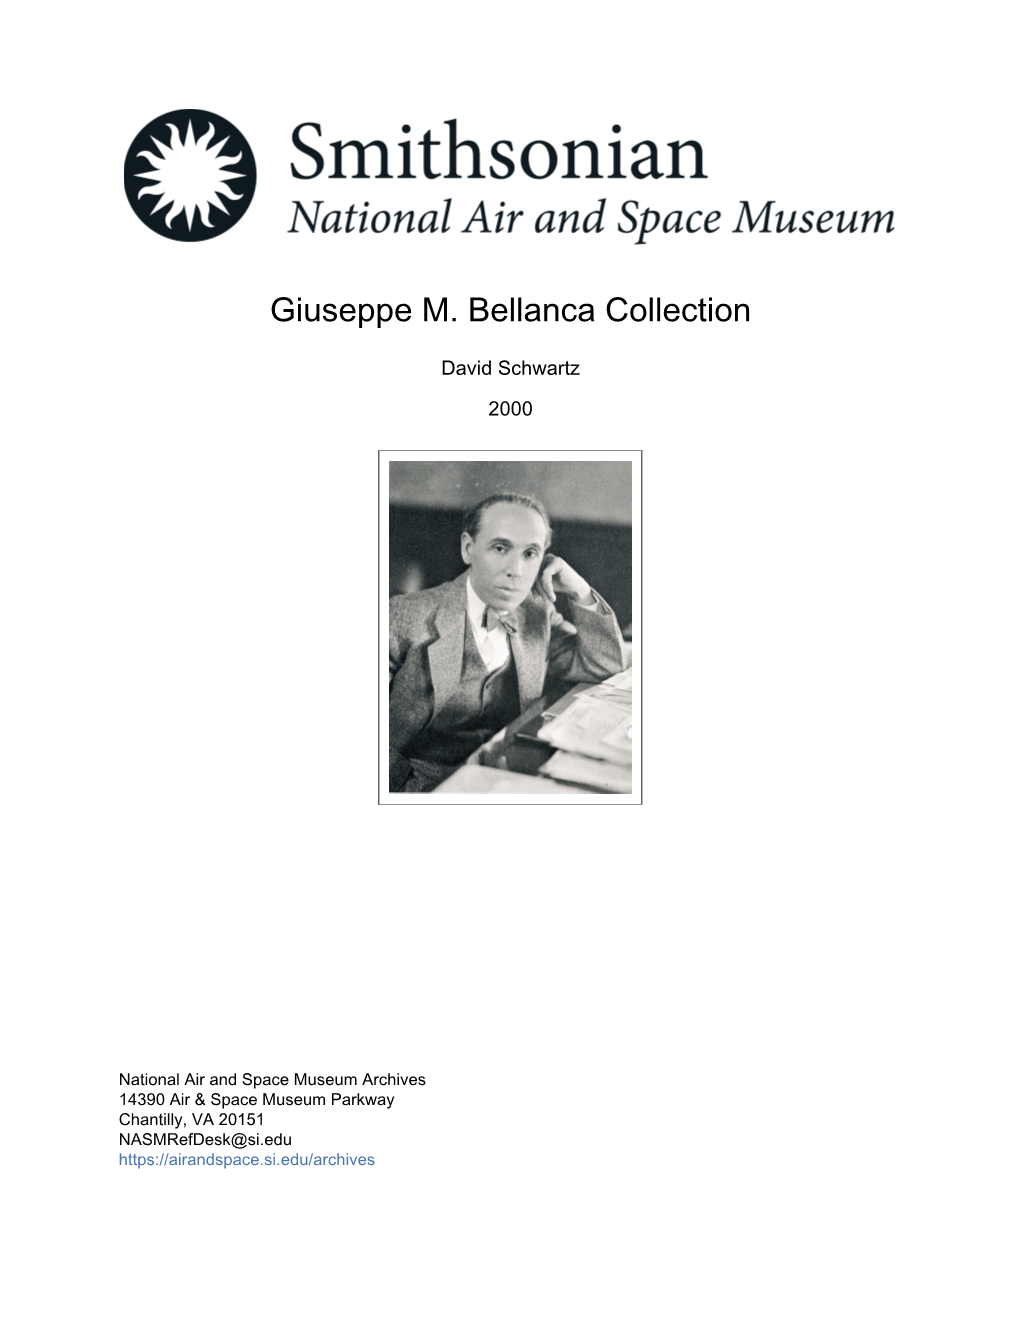 Giuseppe M. Bellanca Collection